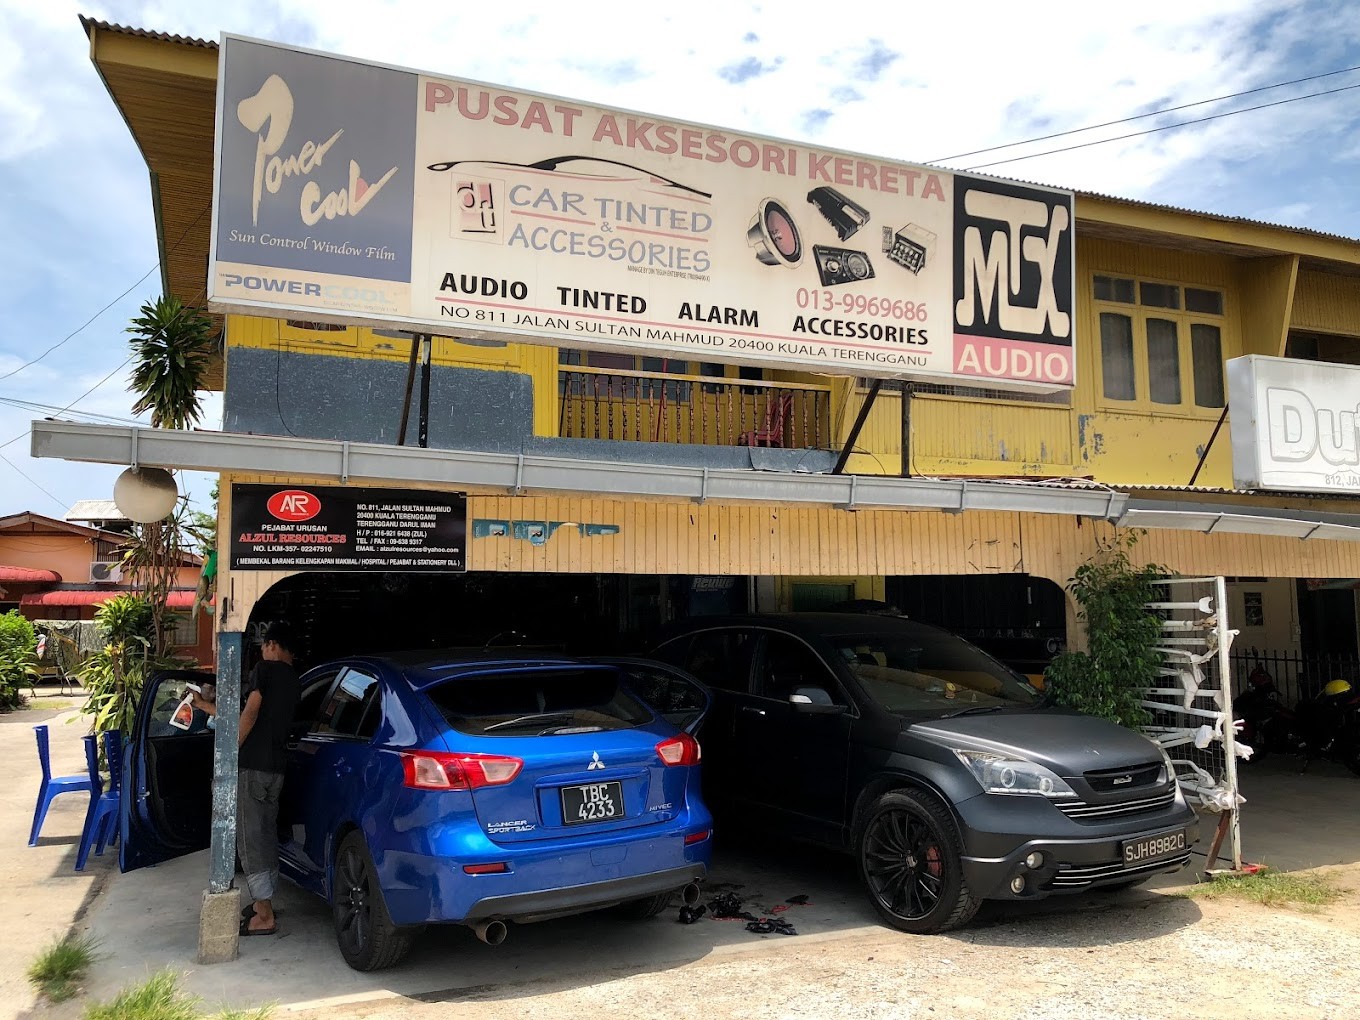 Kedai Tinted Kuala Terengganu DT Car Tinted